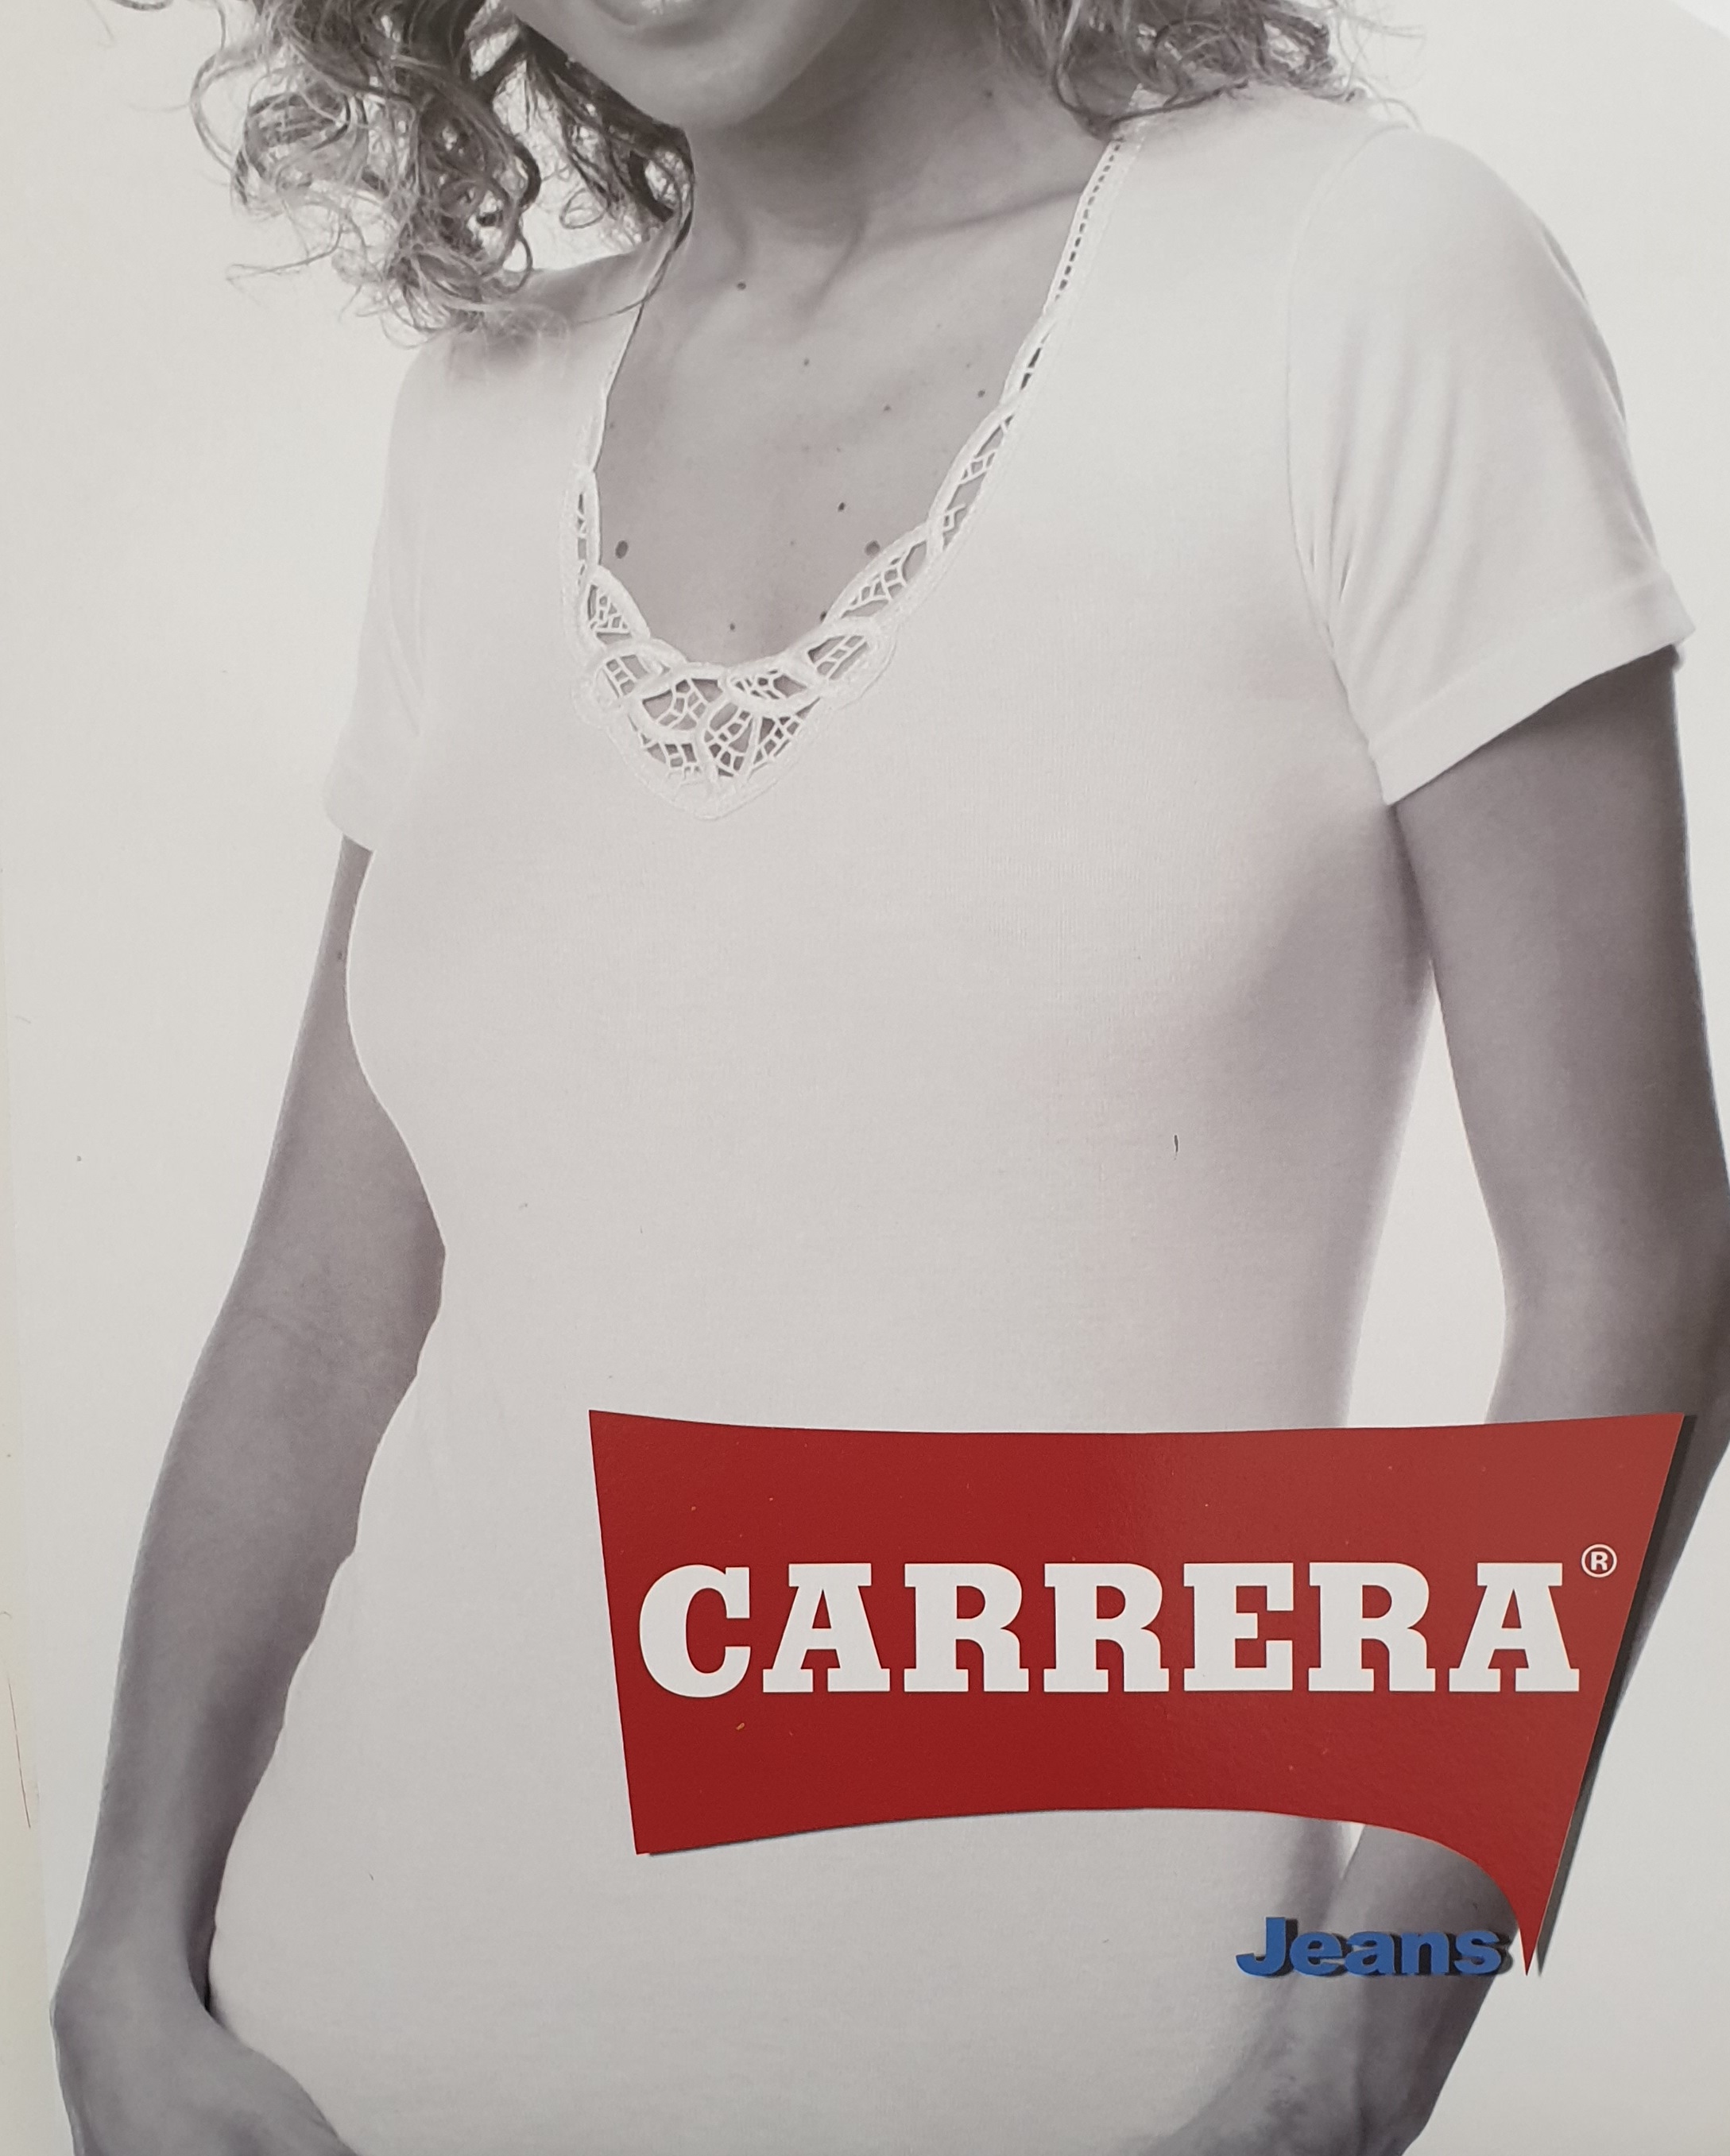 22500 Carrera Carrera maglia mezza manica donna caldo cotone nera art 